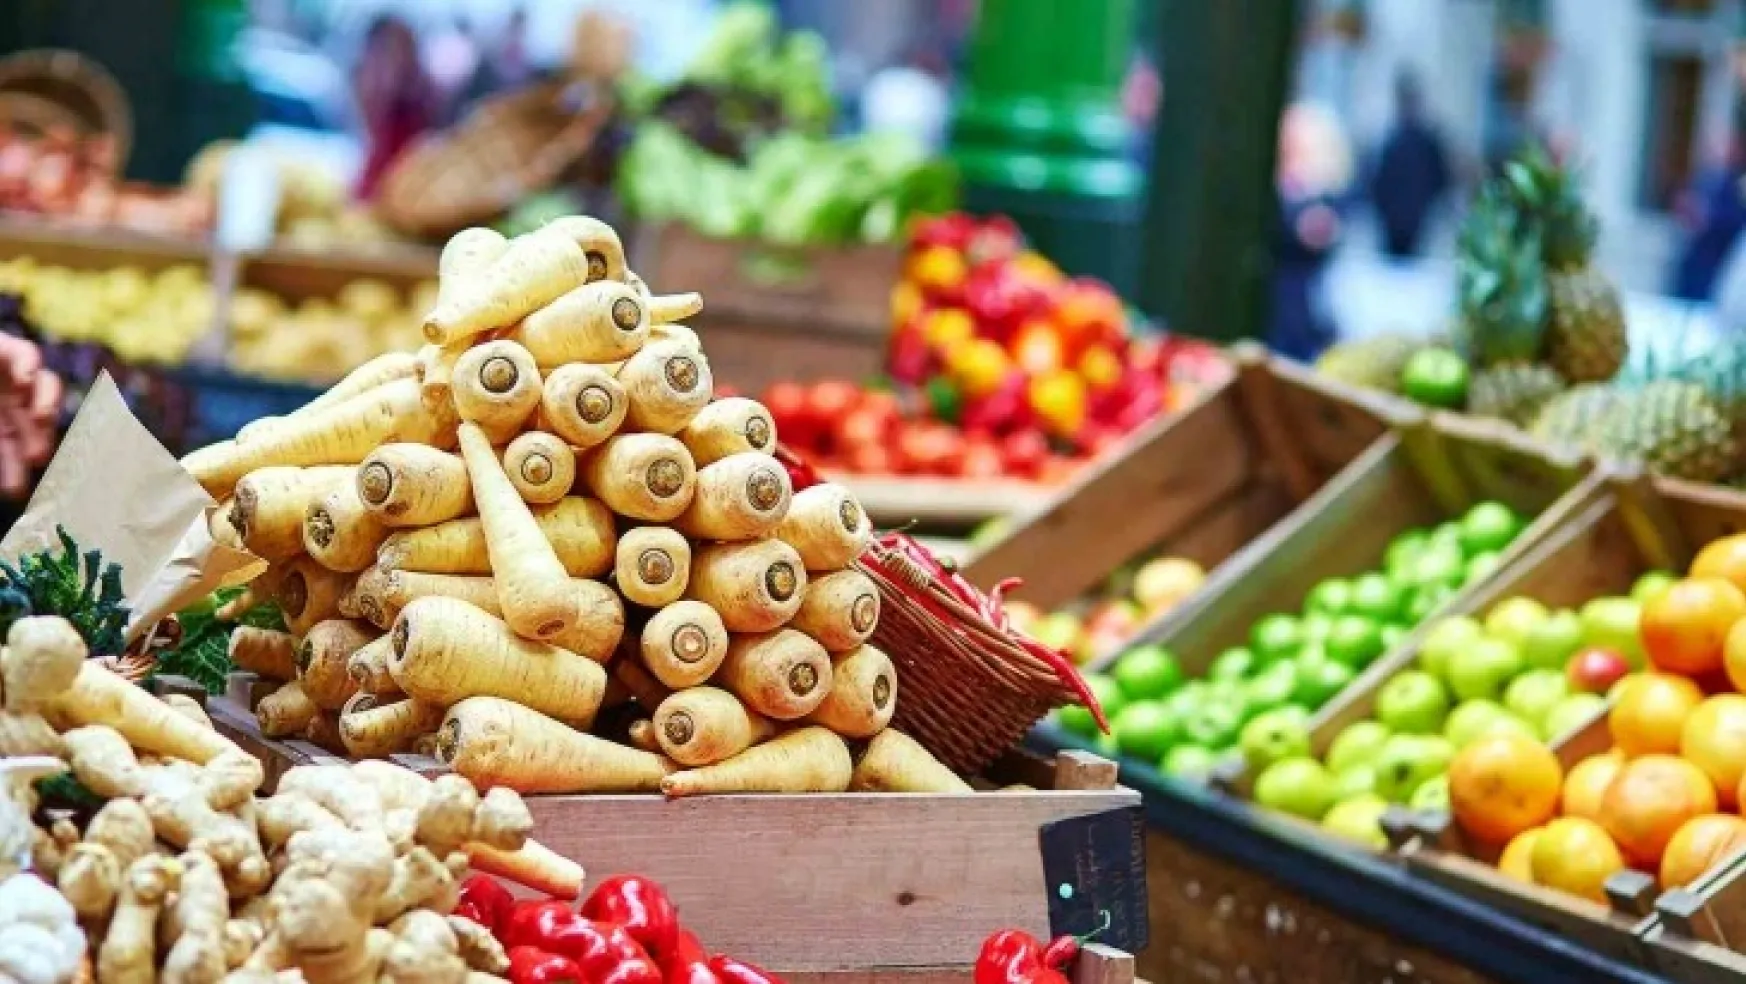 FAO Başekonomisti Torero: Gıda Ticaret Zinciri Tedarikinde Sorun Yaratılıyor